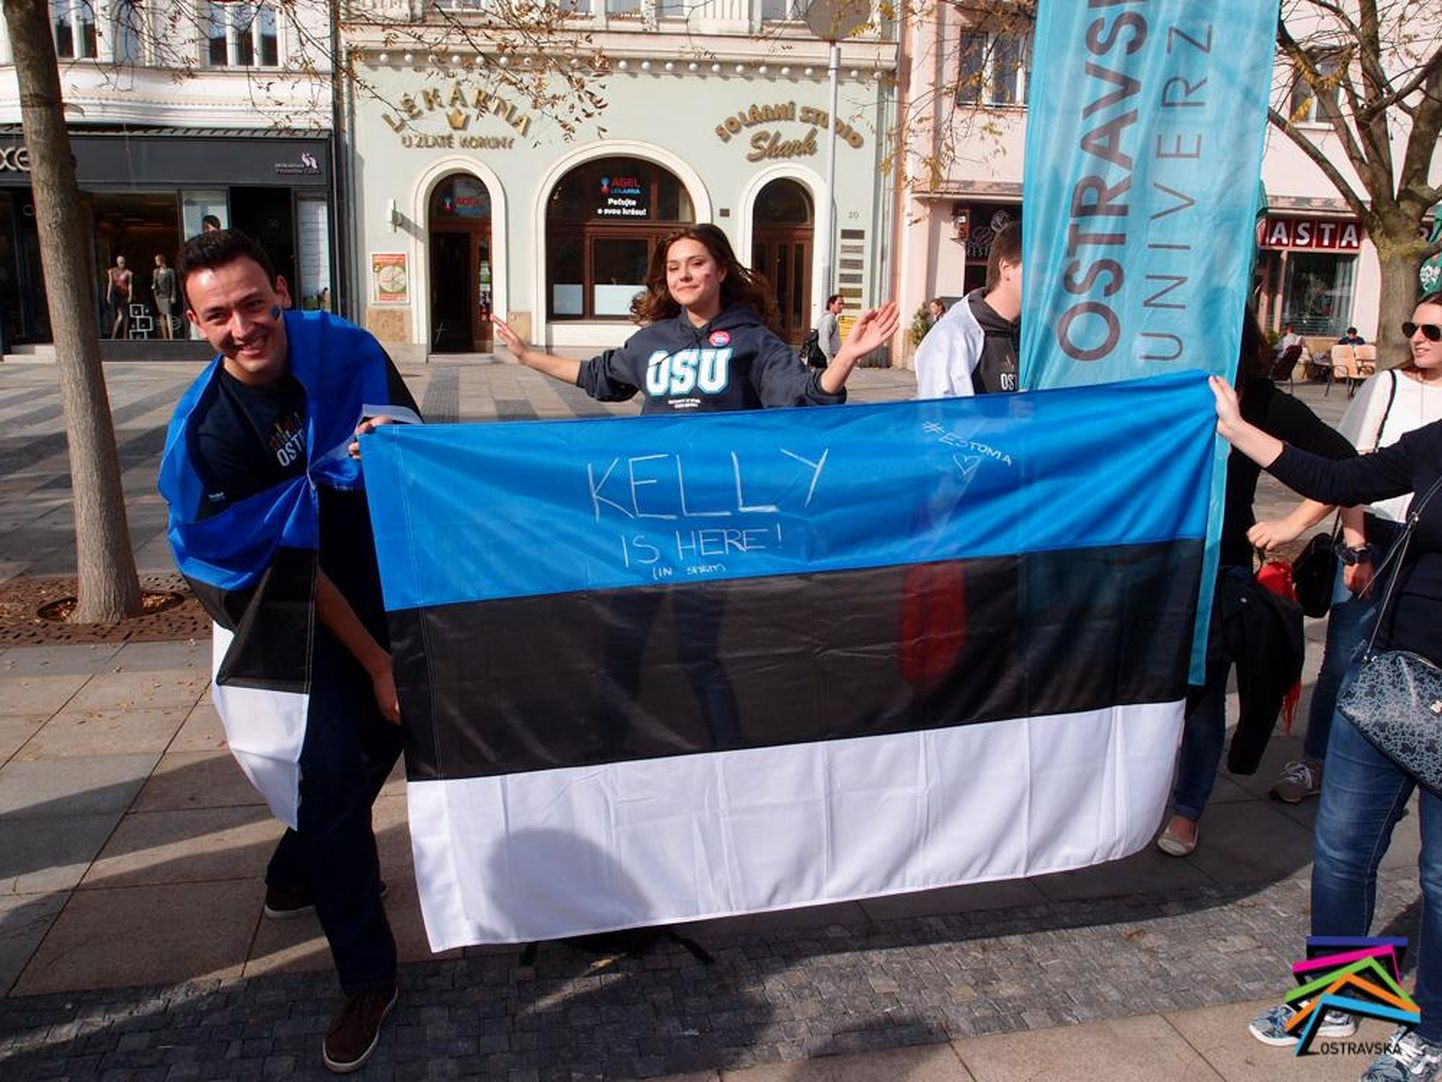 Õpetajapraktikat tegev Marko Zanev (vasakul) Tšehhis Erasmus+ 30. juubeliaasta rongkäigul hoidmas Eesti lippu.